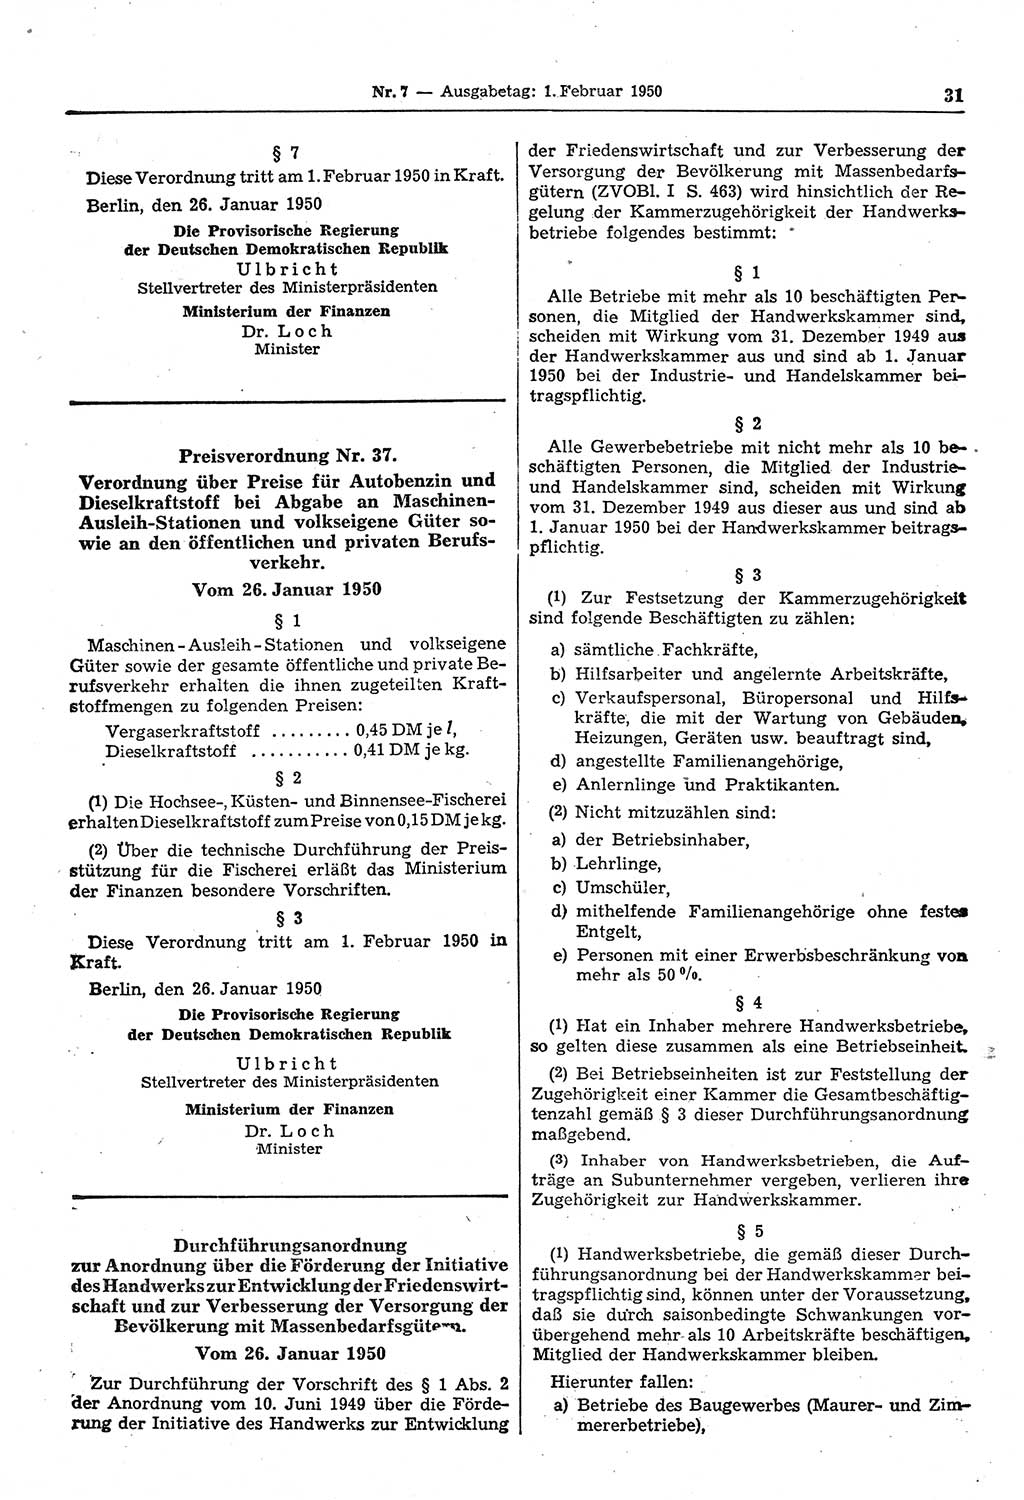 Gesetzblatt (GBl.) der Deutschen Demokratischen Republik (DDR) 1950, Seite 31 (GBl. DDR 1950, S. 31)